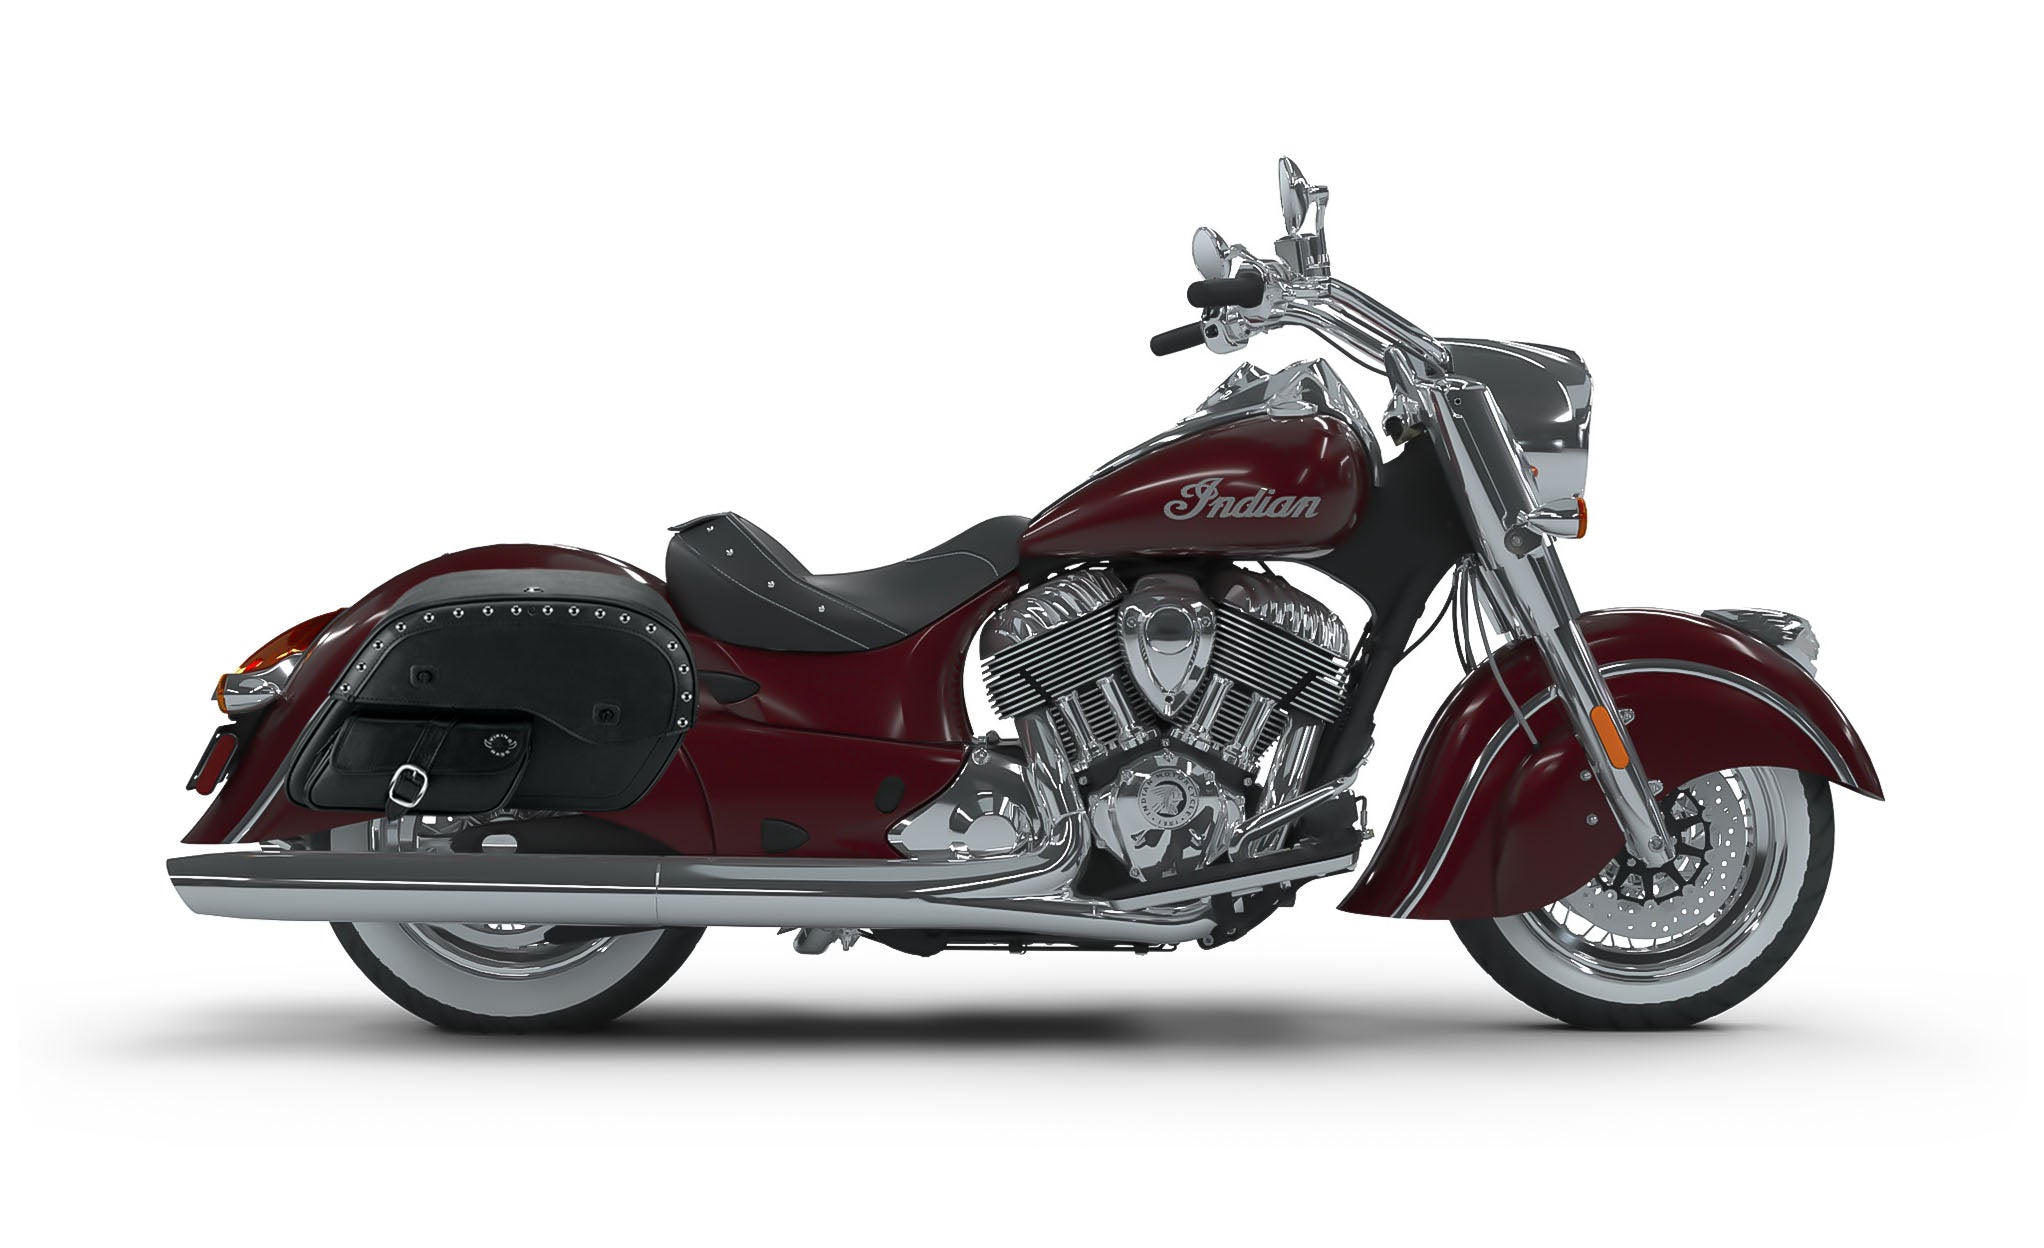 Viking Side Pocket Large Studded Indian Chief Classic Leather Motorcycle Saddlebags on Bike Photo @expand